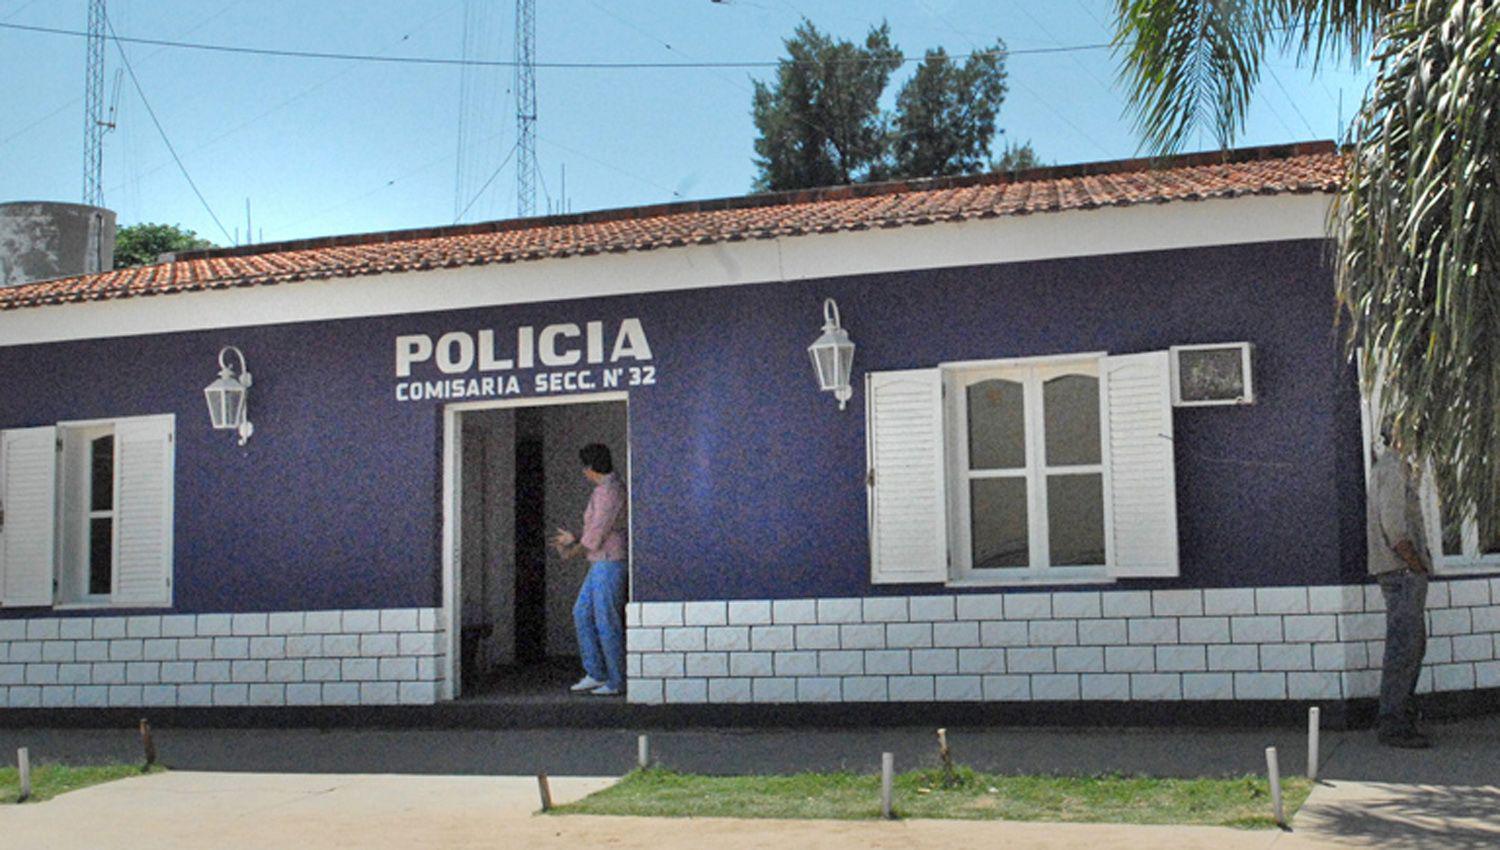 Tres policiacuteas presos acusados de abusar de un adolescente de 14 antildeos